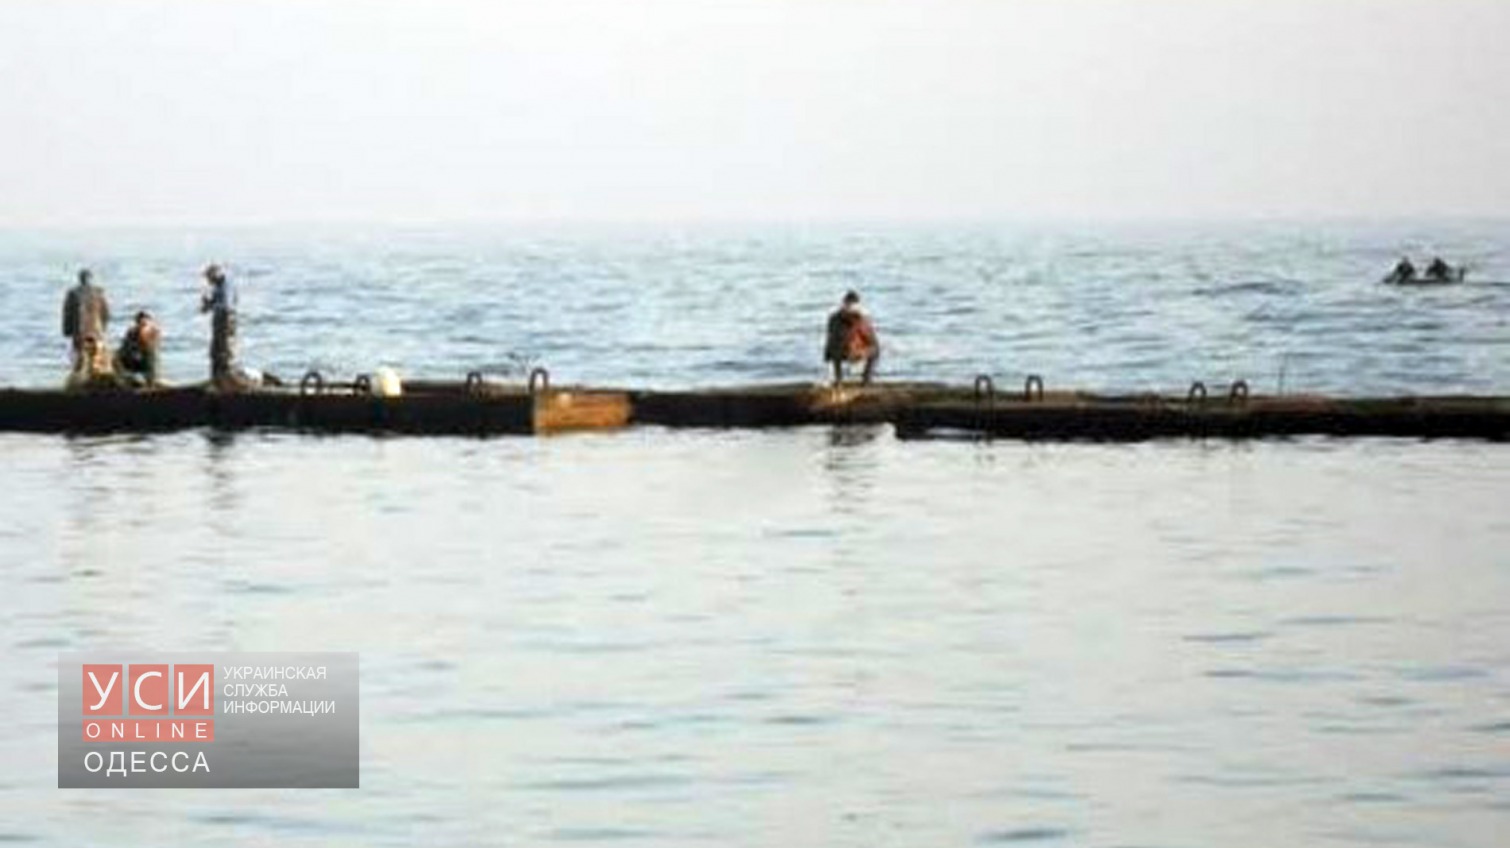 Одесские спасатели за день сохранили жизнь 3 рыбакам «фото»